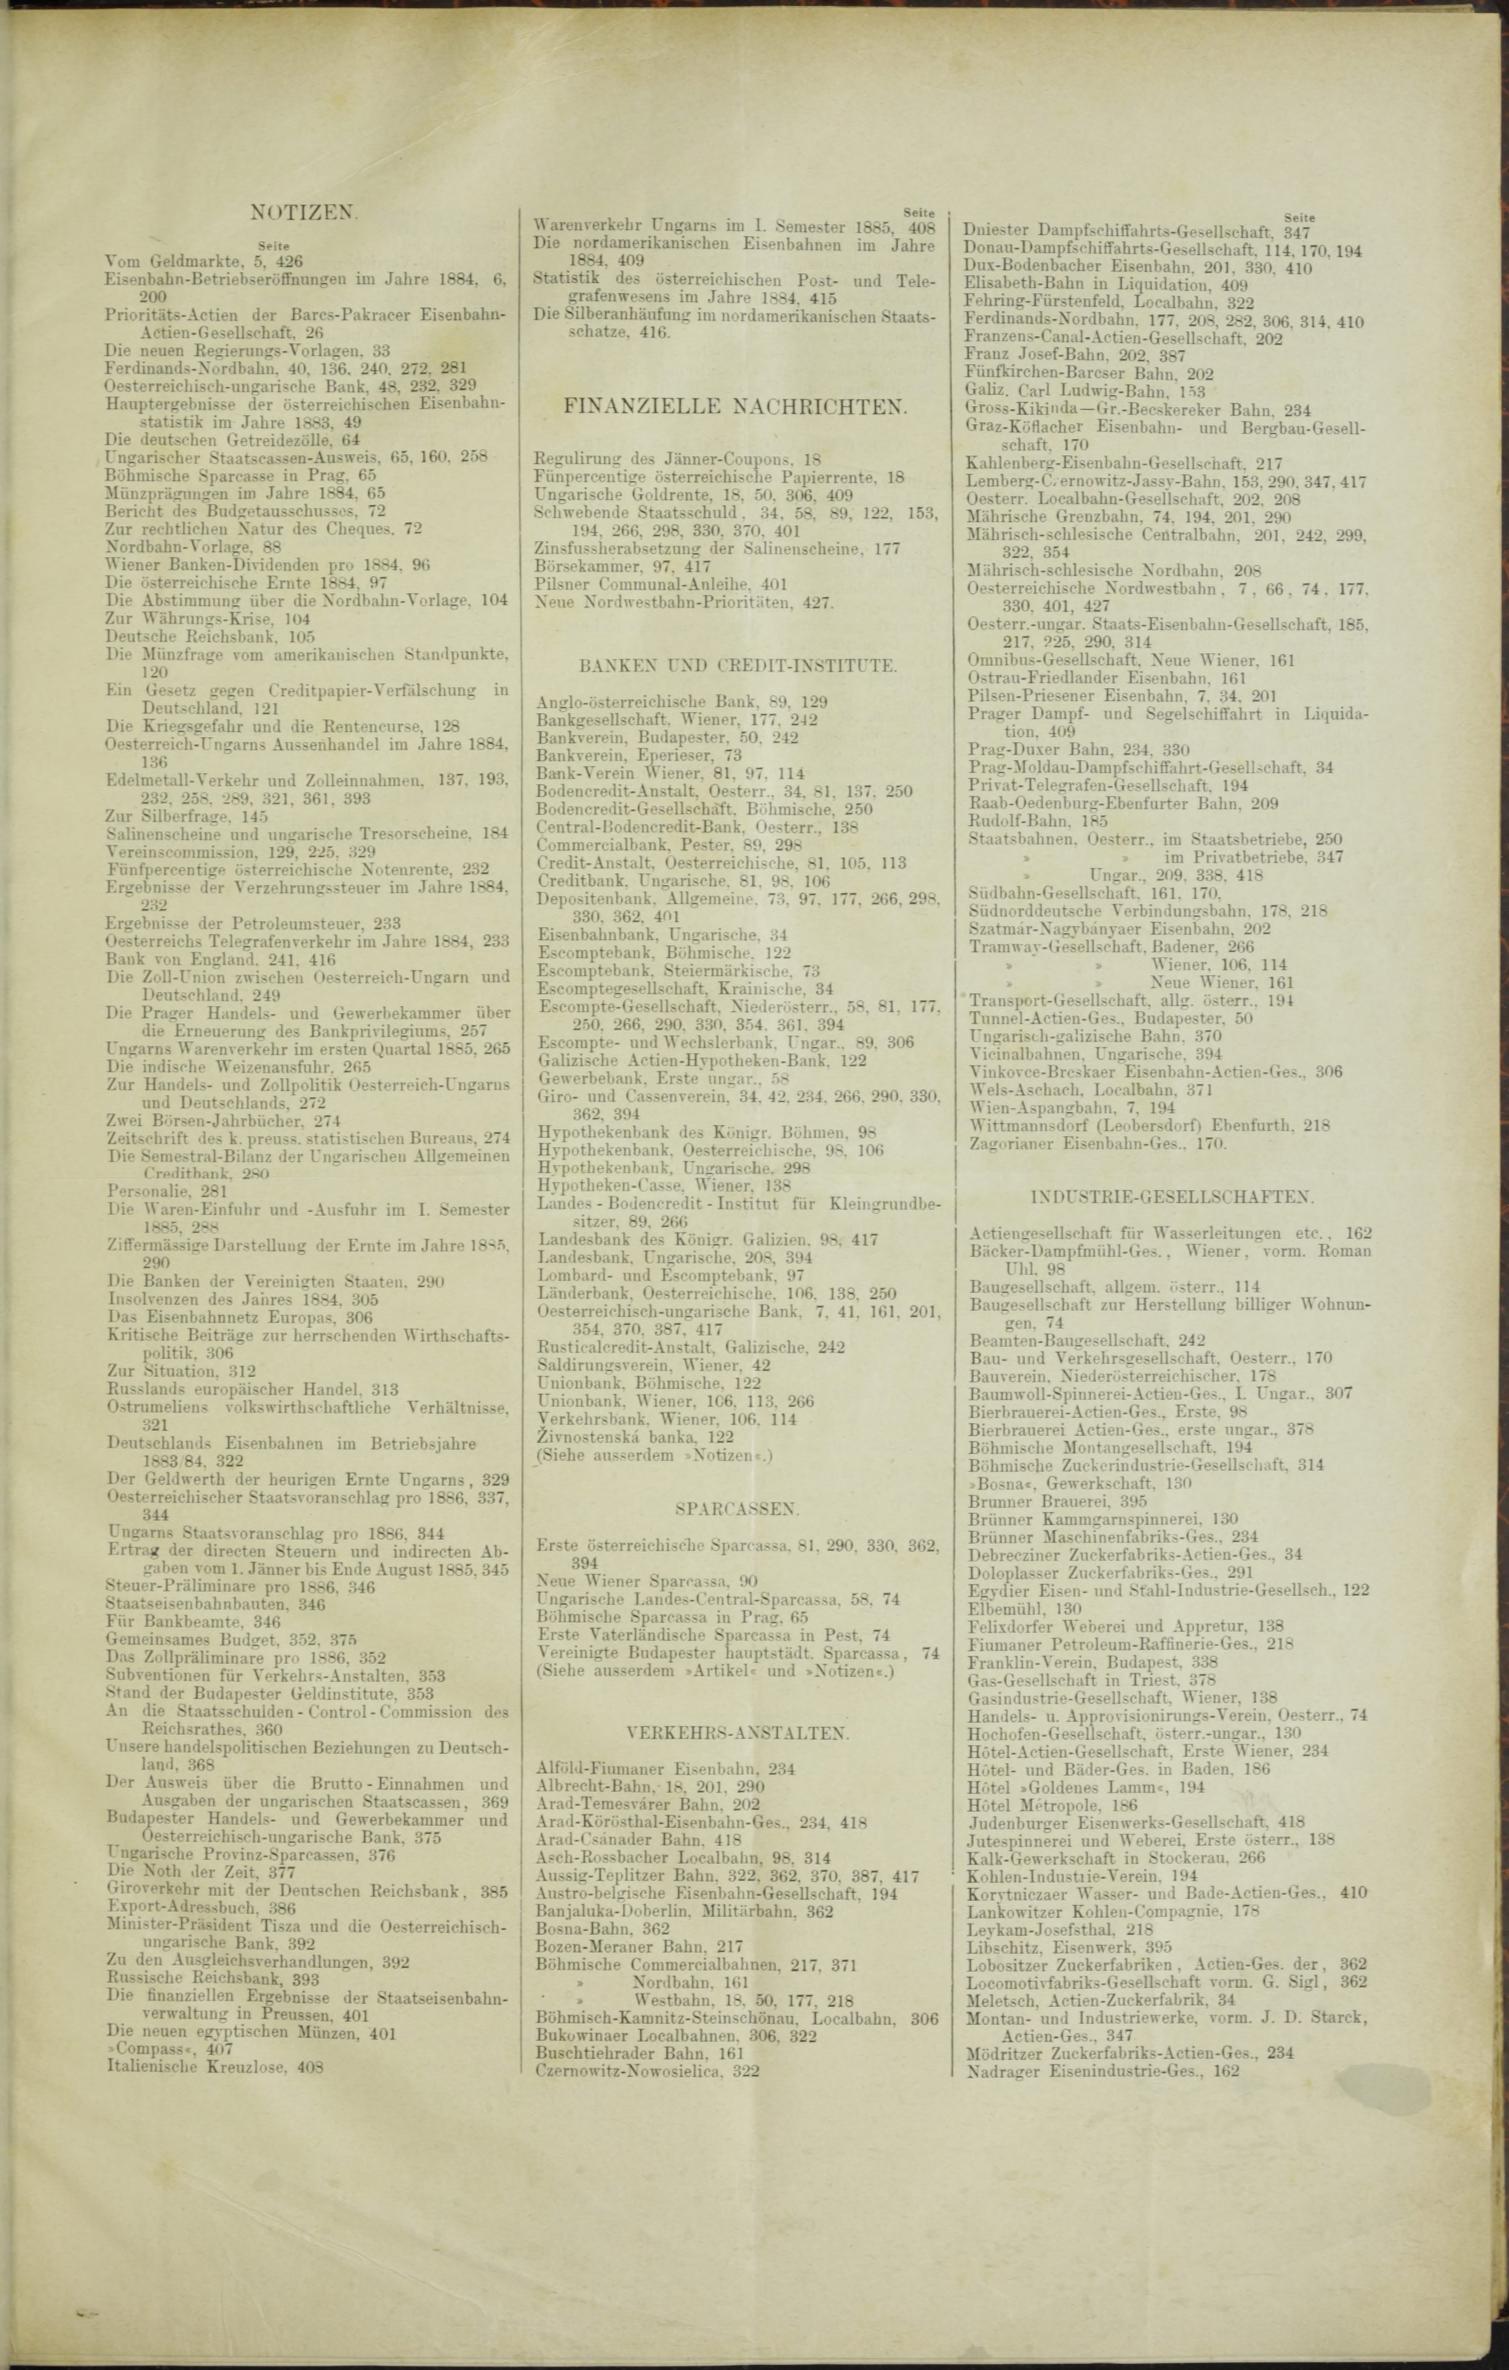 Der Tresor 24.09.1885 - Seite 11